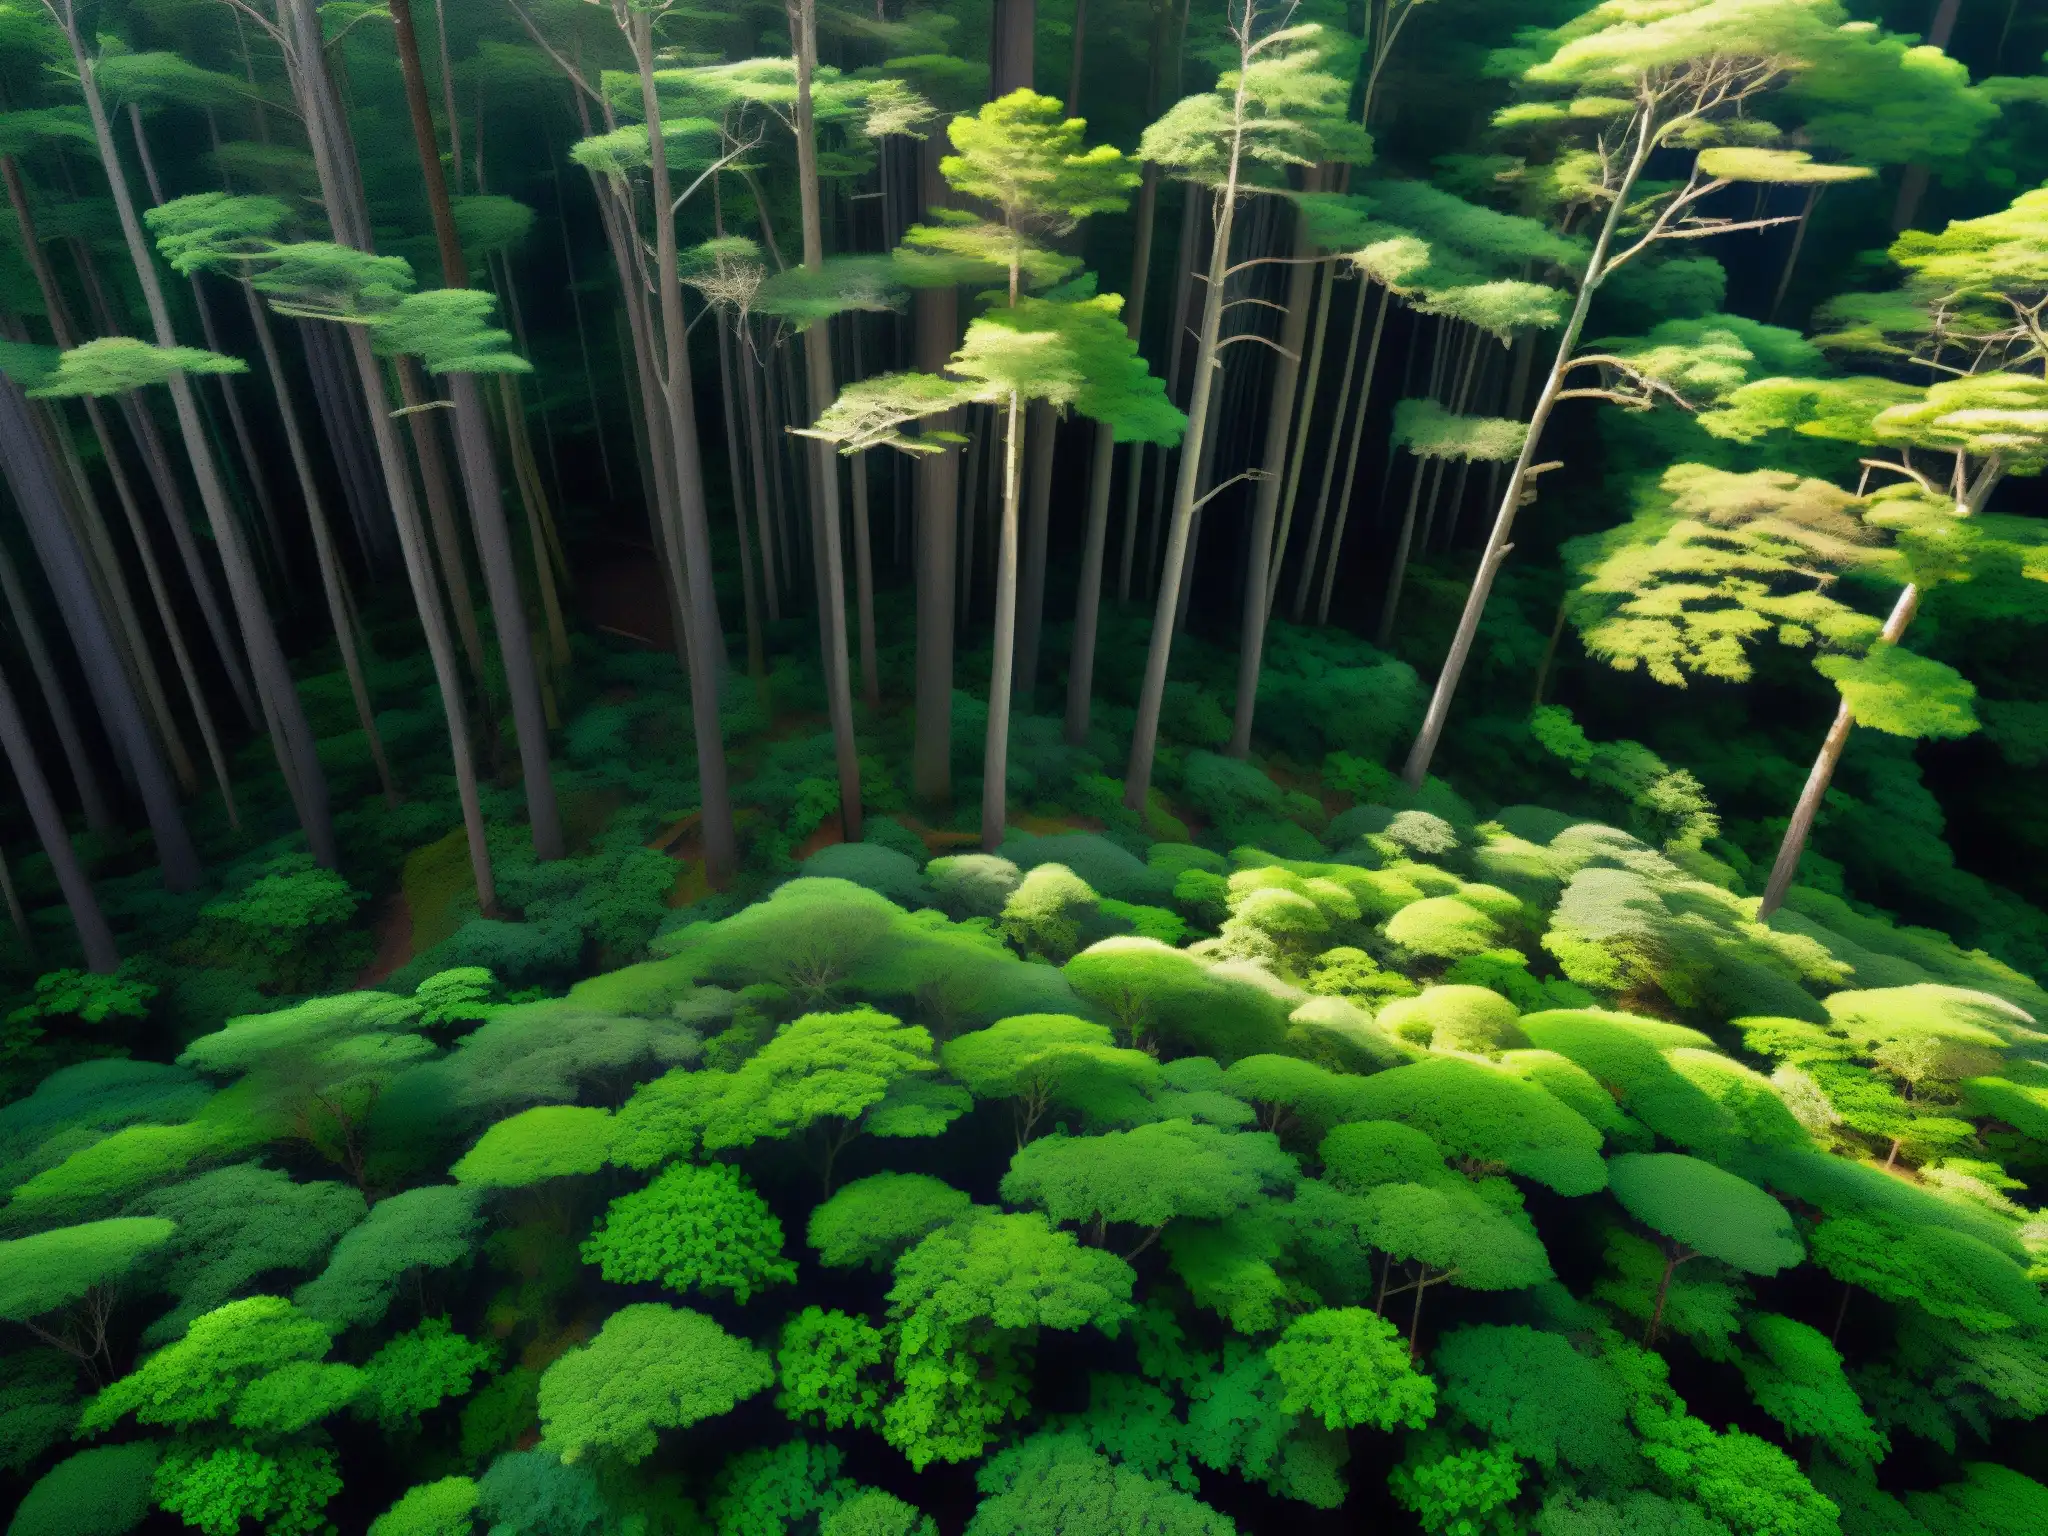 Misterioso bosque de Aokigahara: luz filtrándose entre densa vegetación, creando un ambiente encantador y misterioso